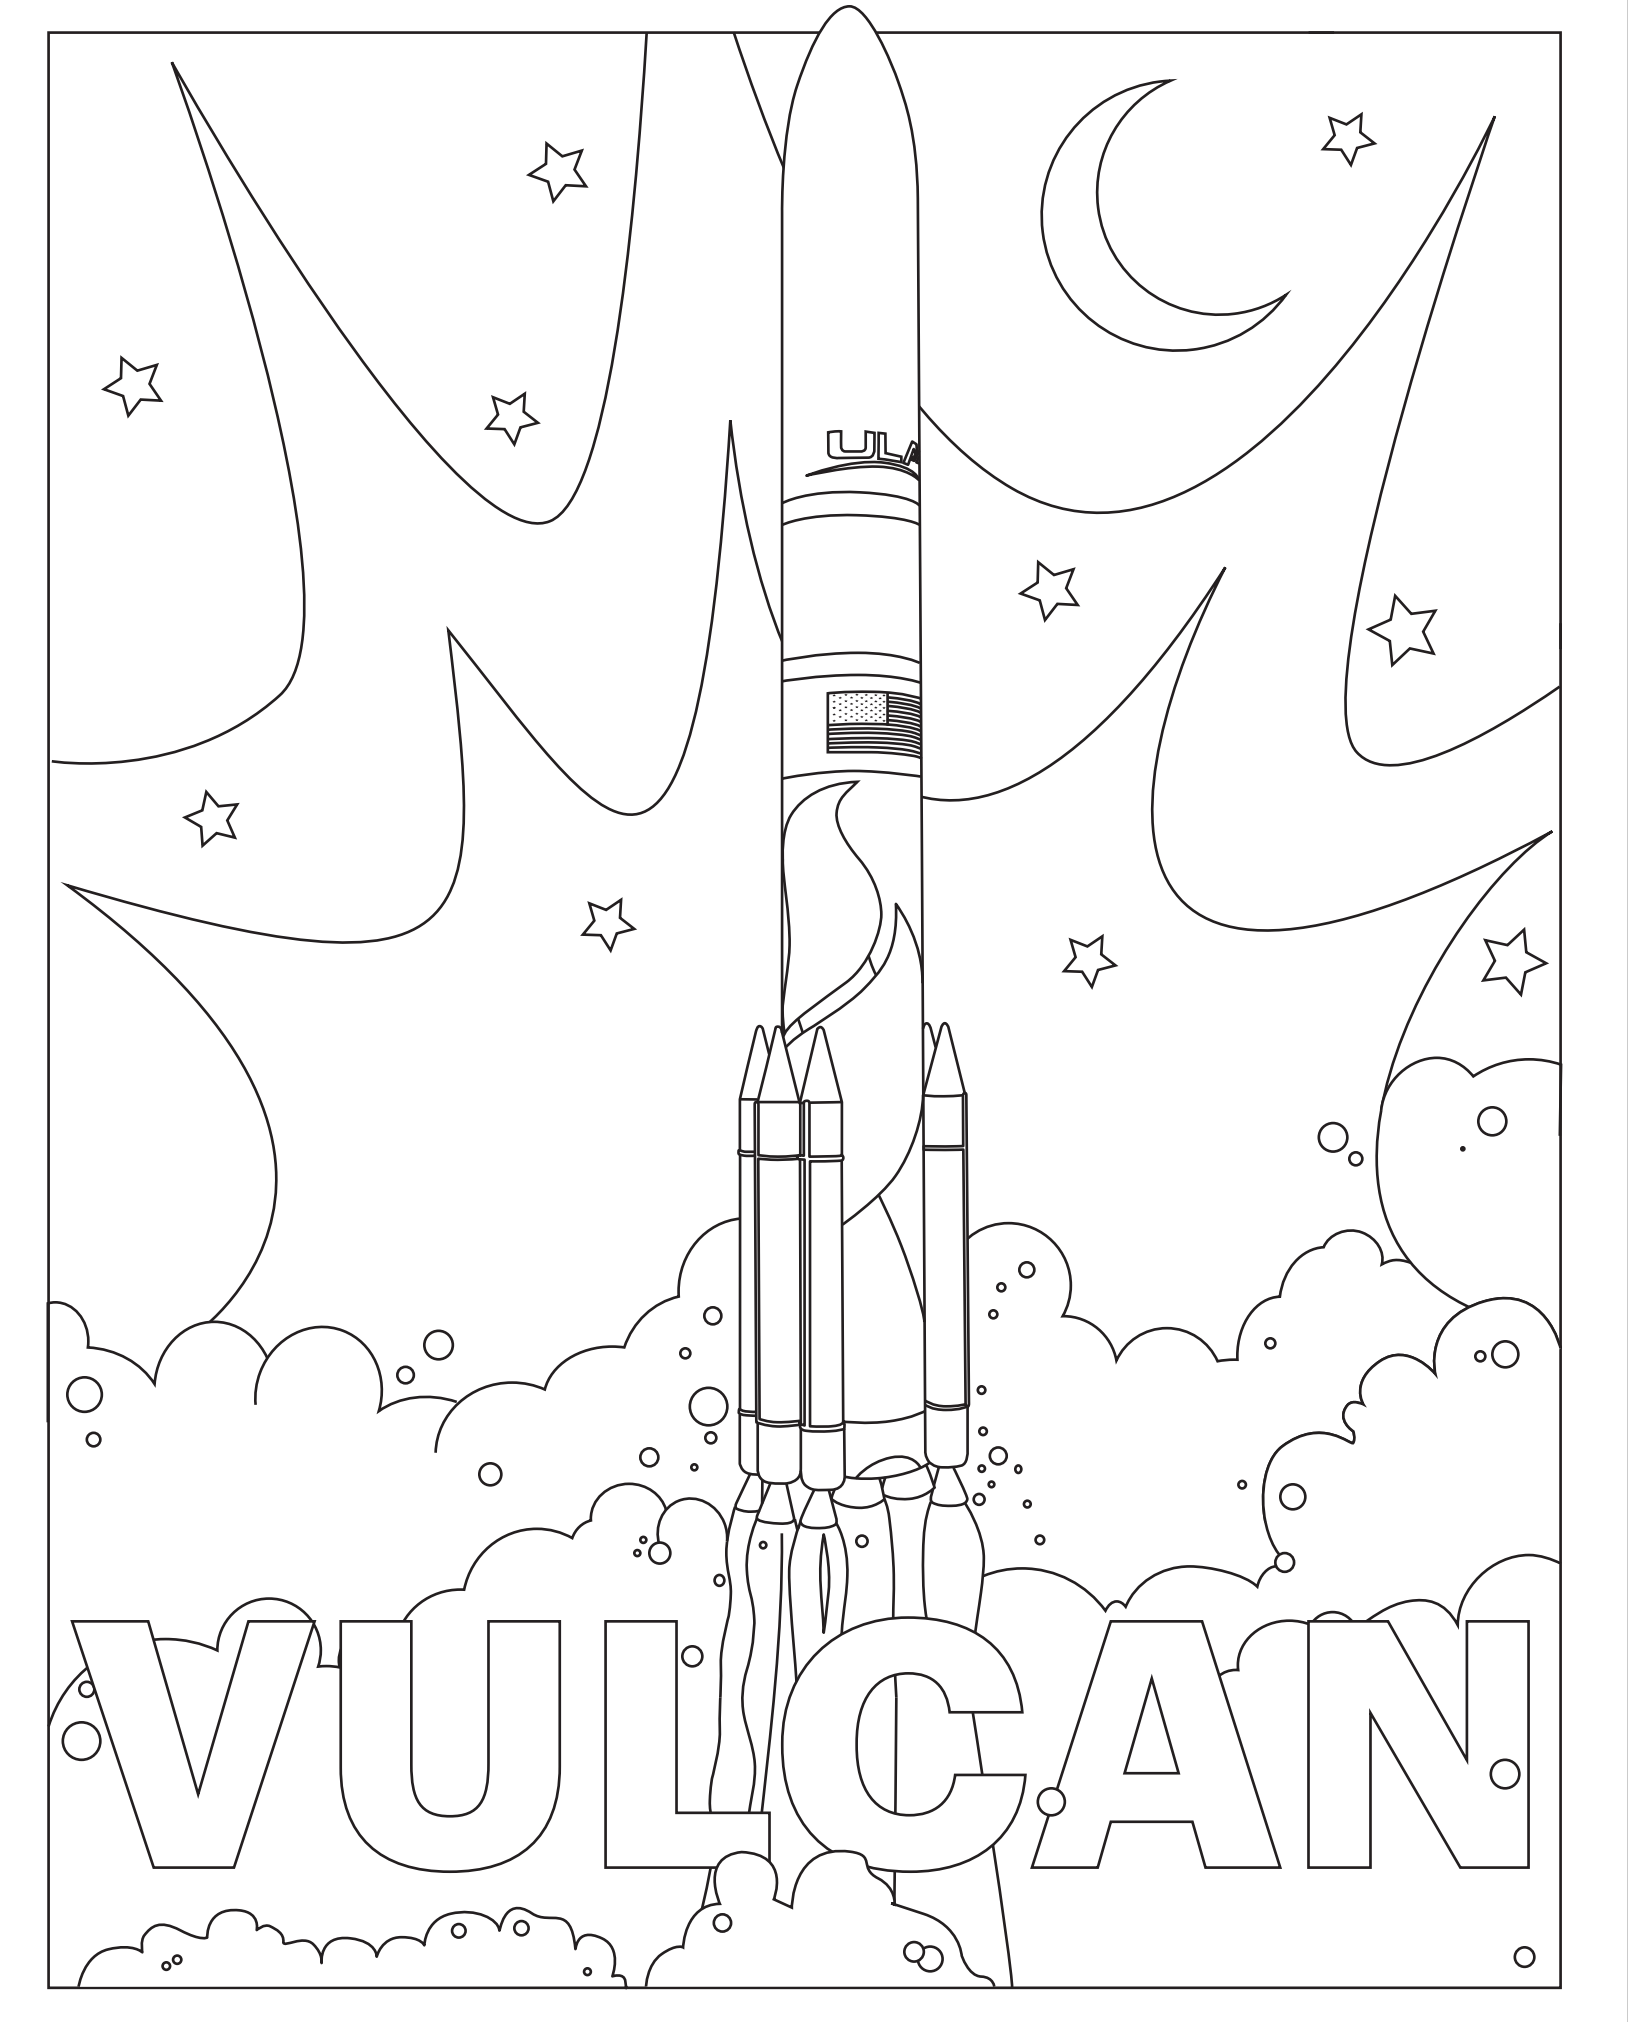 ULA_Vulcan_Cert-1_Coloring